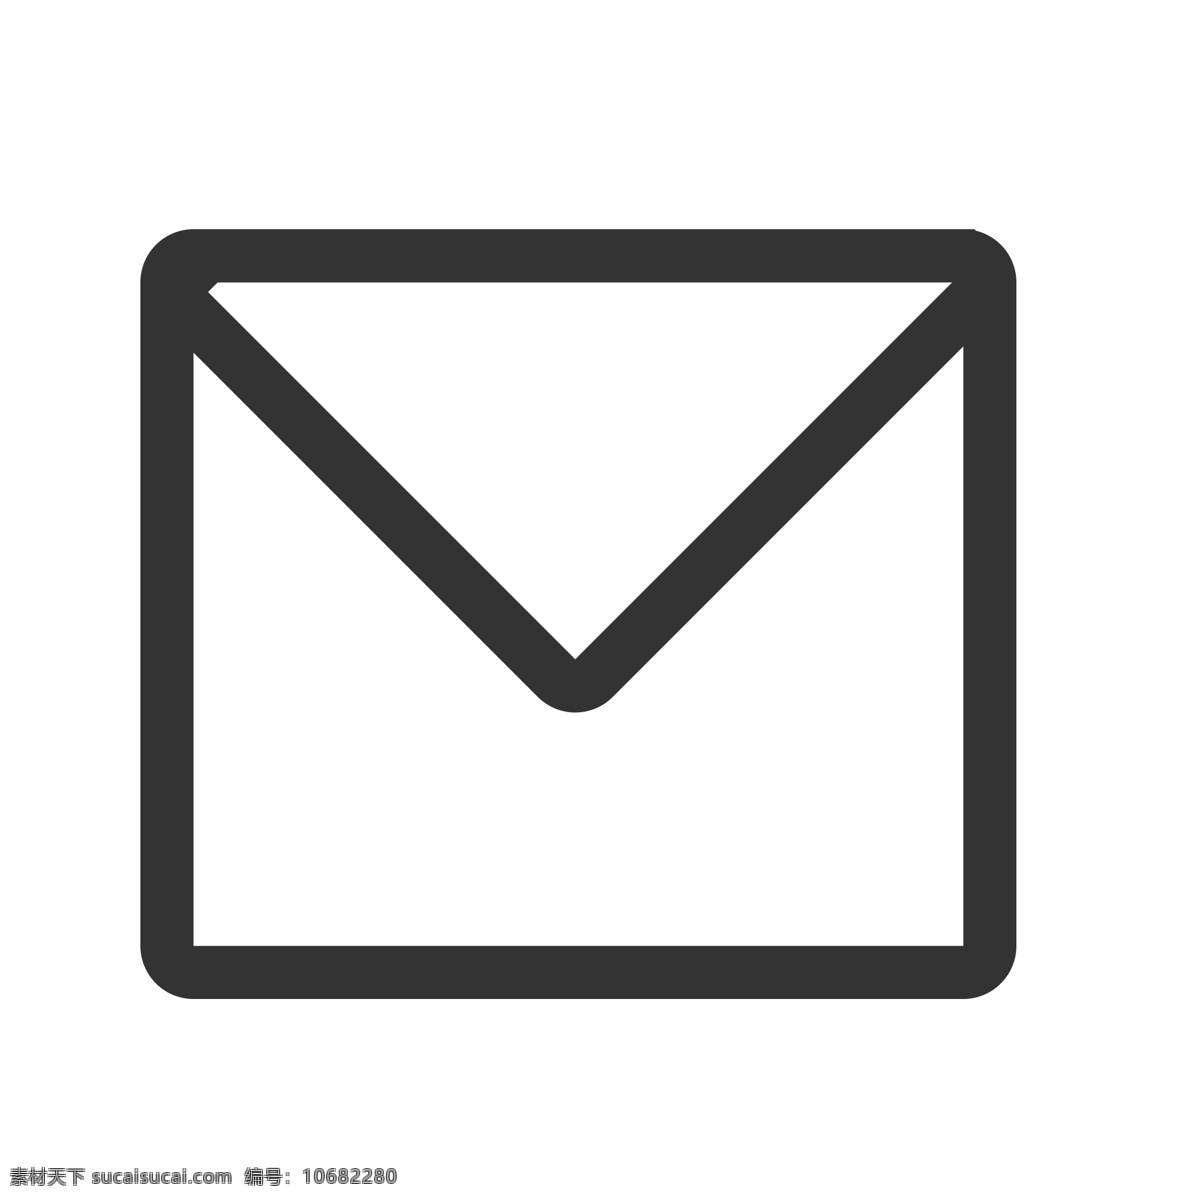 扁平化信封 信件 邮件 扁平化ui ui图标 手机图标 界面ui 网页ui h5图标